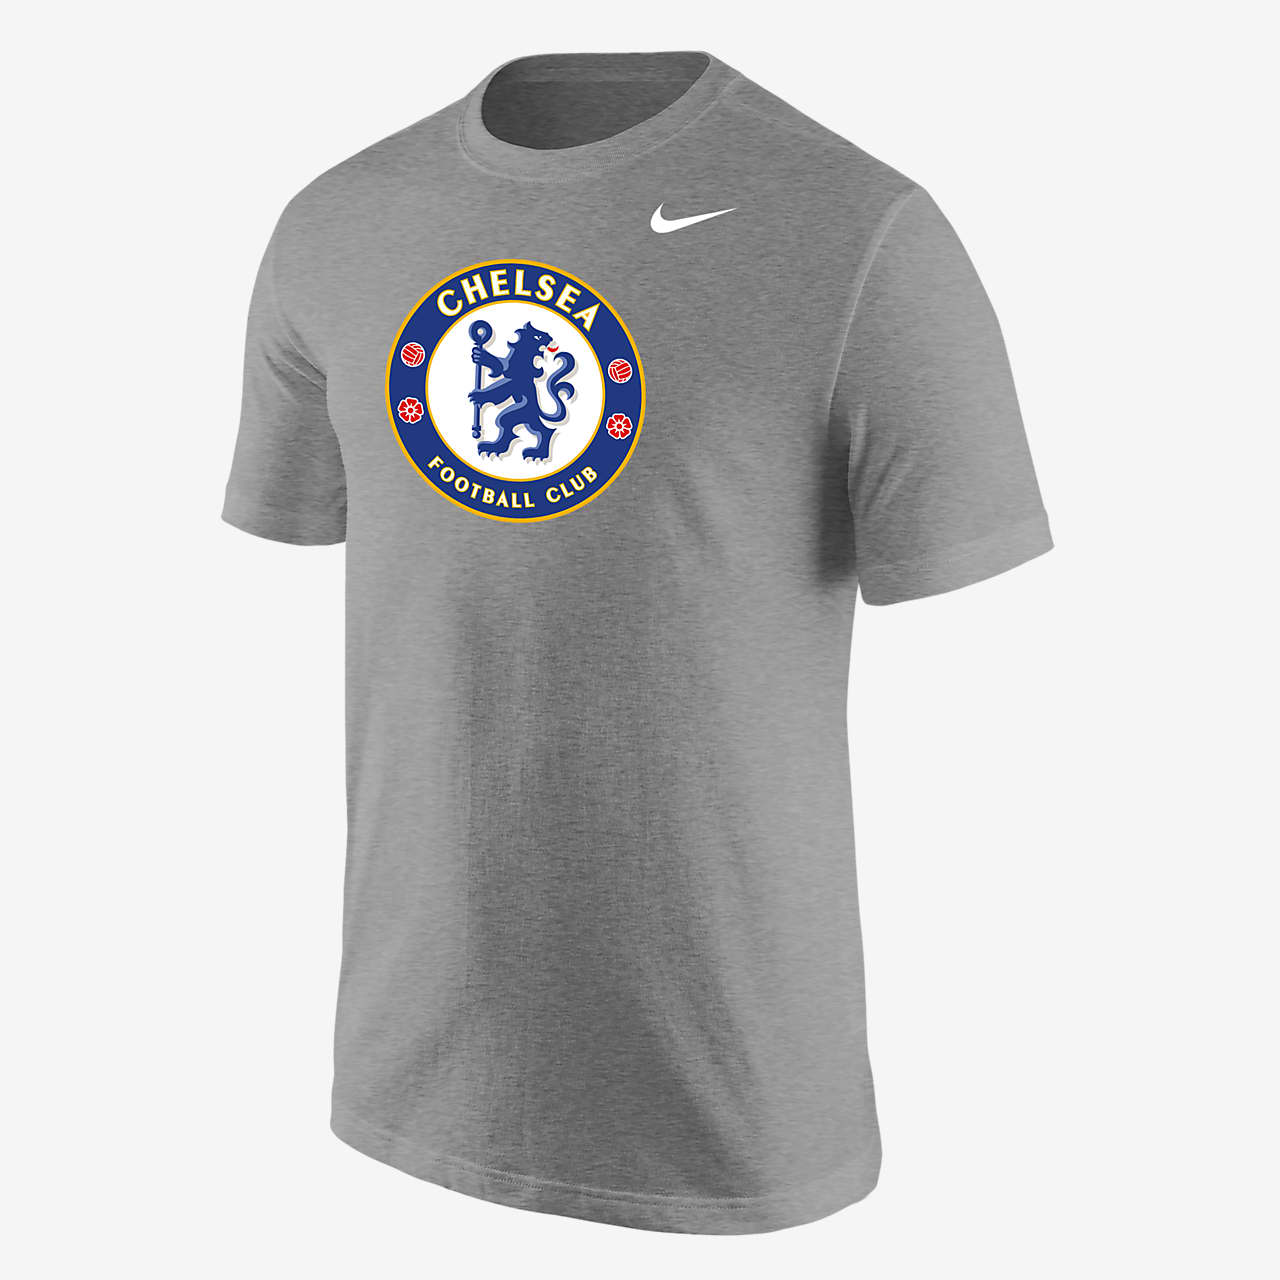 Zich verzetten tegen belofte Verscherpen Chelsea Men's T-Shirt. Nike.com